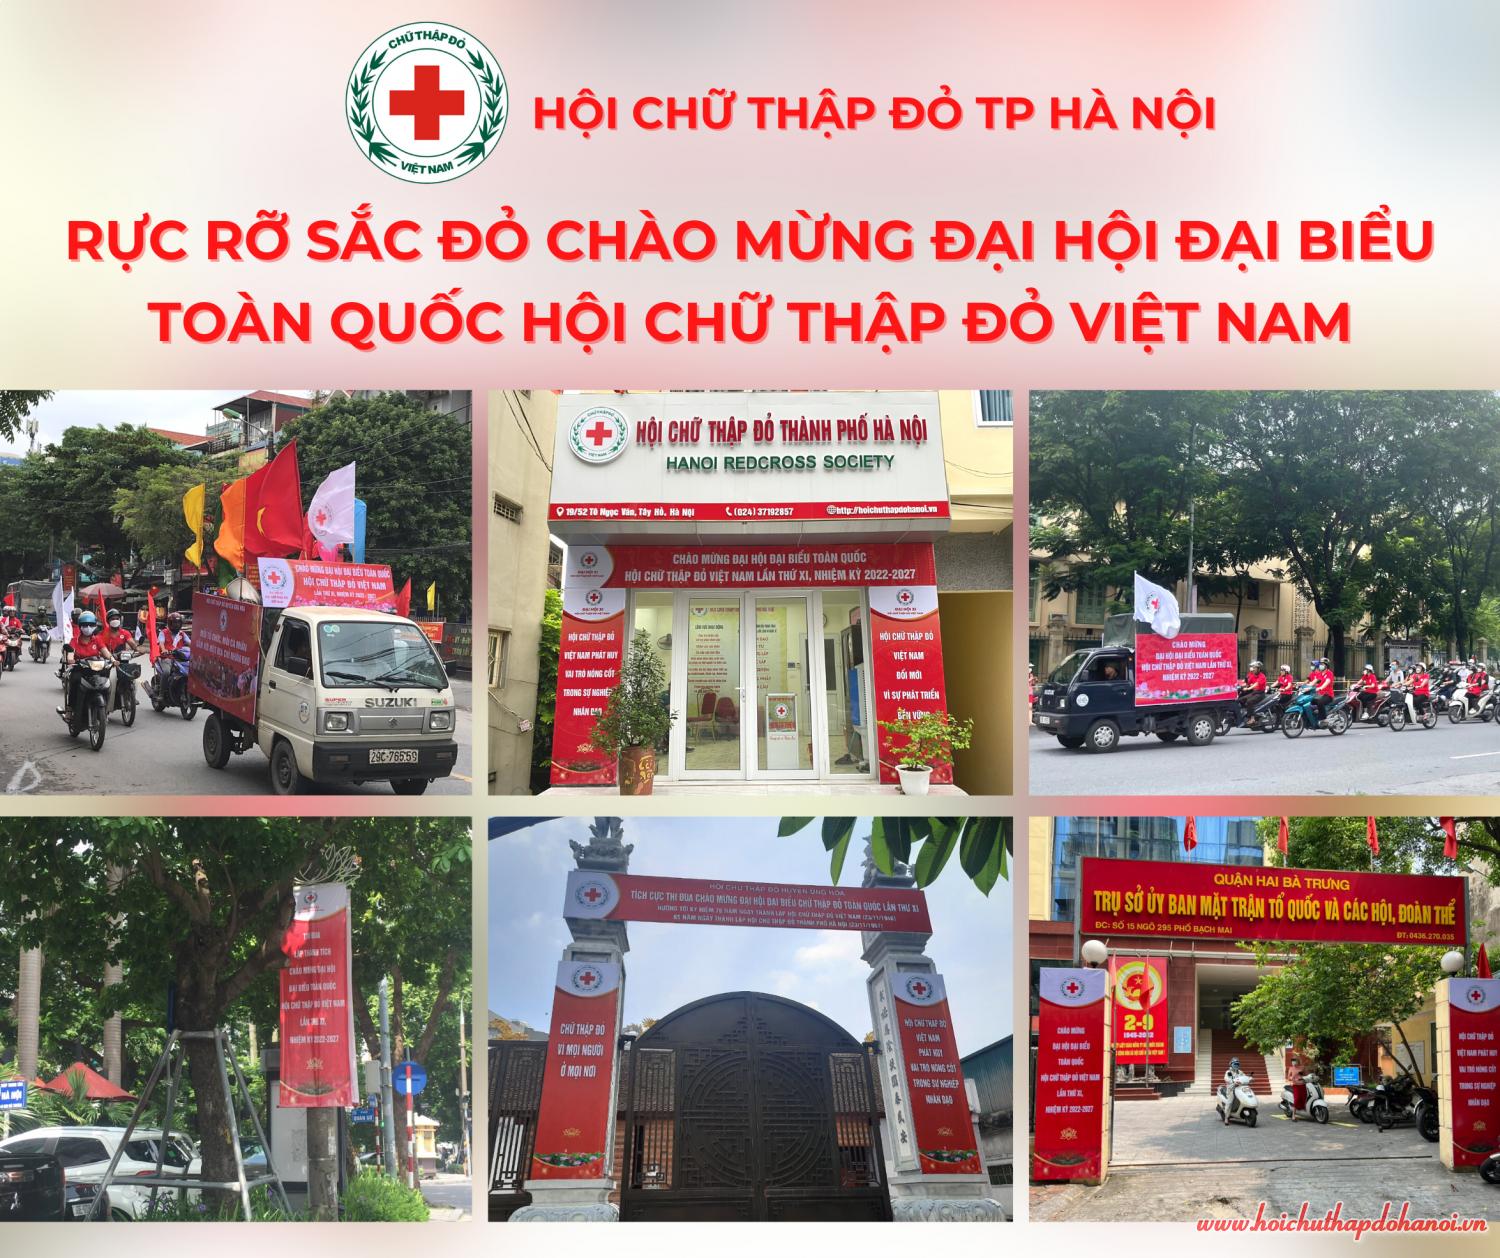 Rực rỡ sắc đỏ chào mừng Đại hội đại biểu toàn quốc Hội chữ thập đỏ Việt Nam lần thứ XI